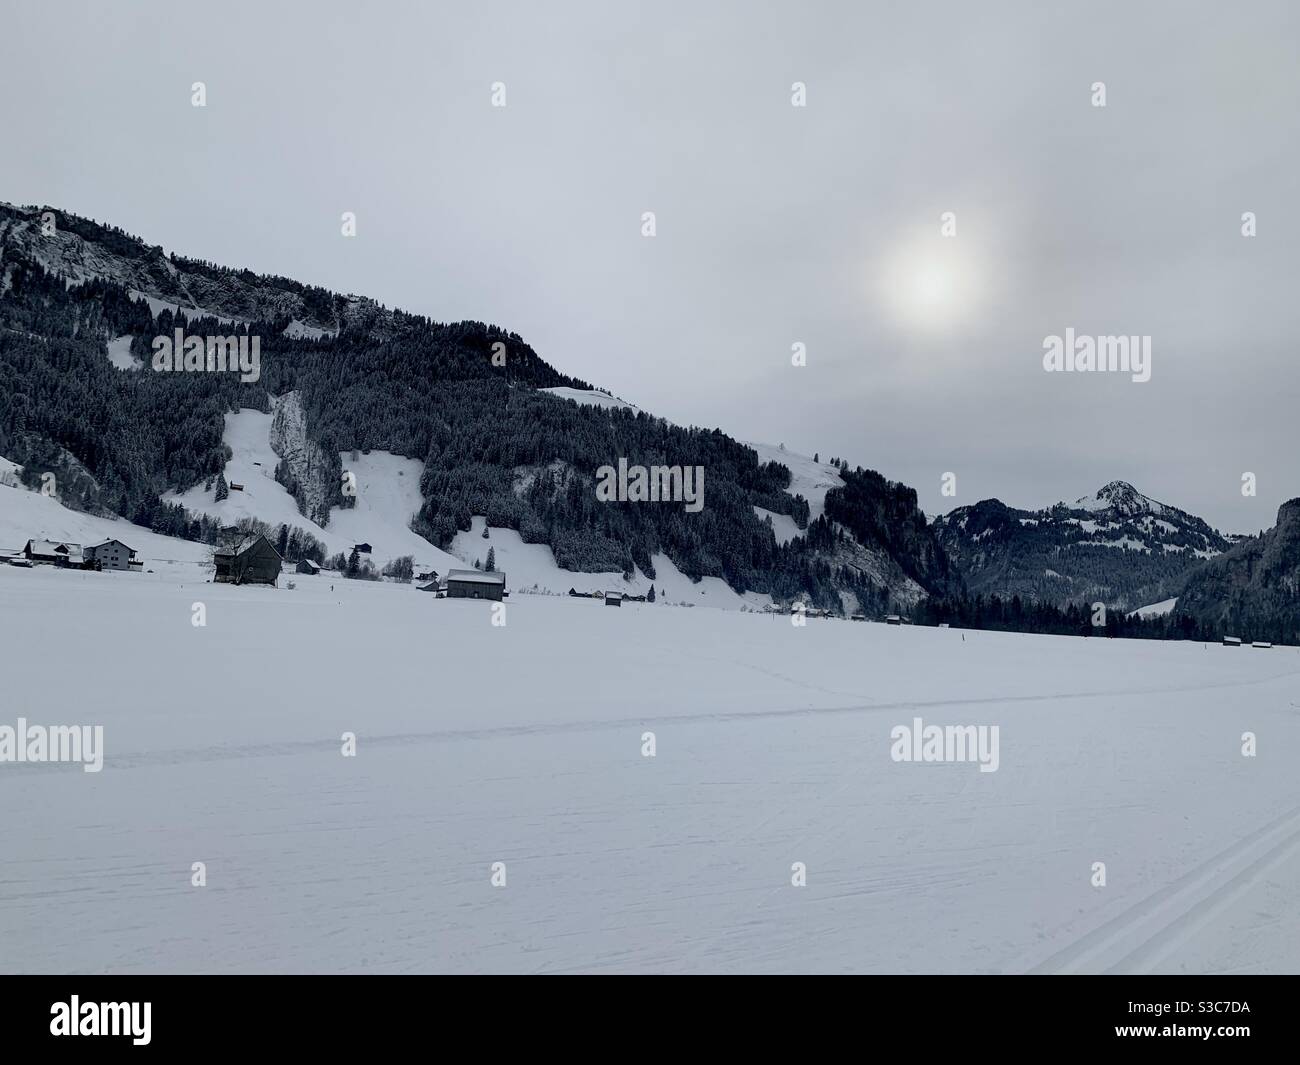 Piste de ski de fond dans le village de Studen en Suisse entourée de montagnes. Un paysage en hiver sous la neige. Le ciel est couvert et le soleil est flou. Banque D'Images